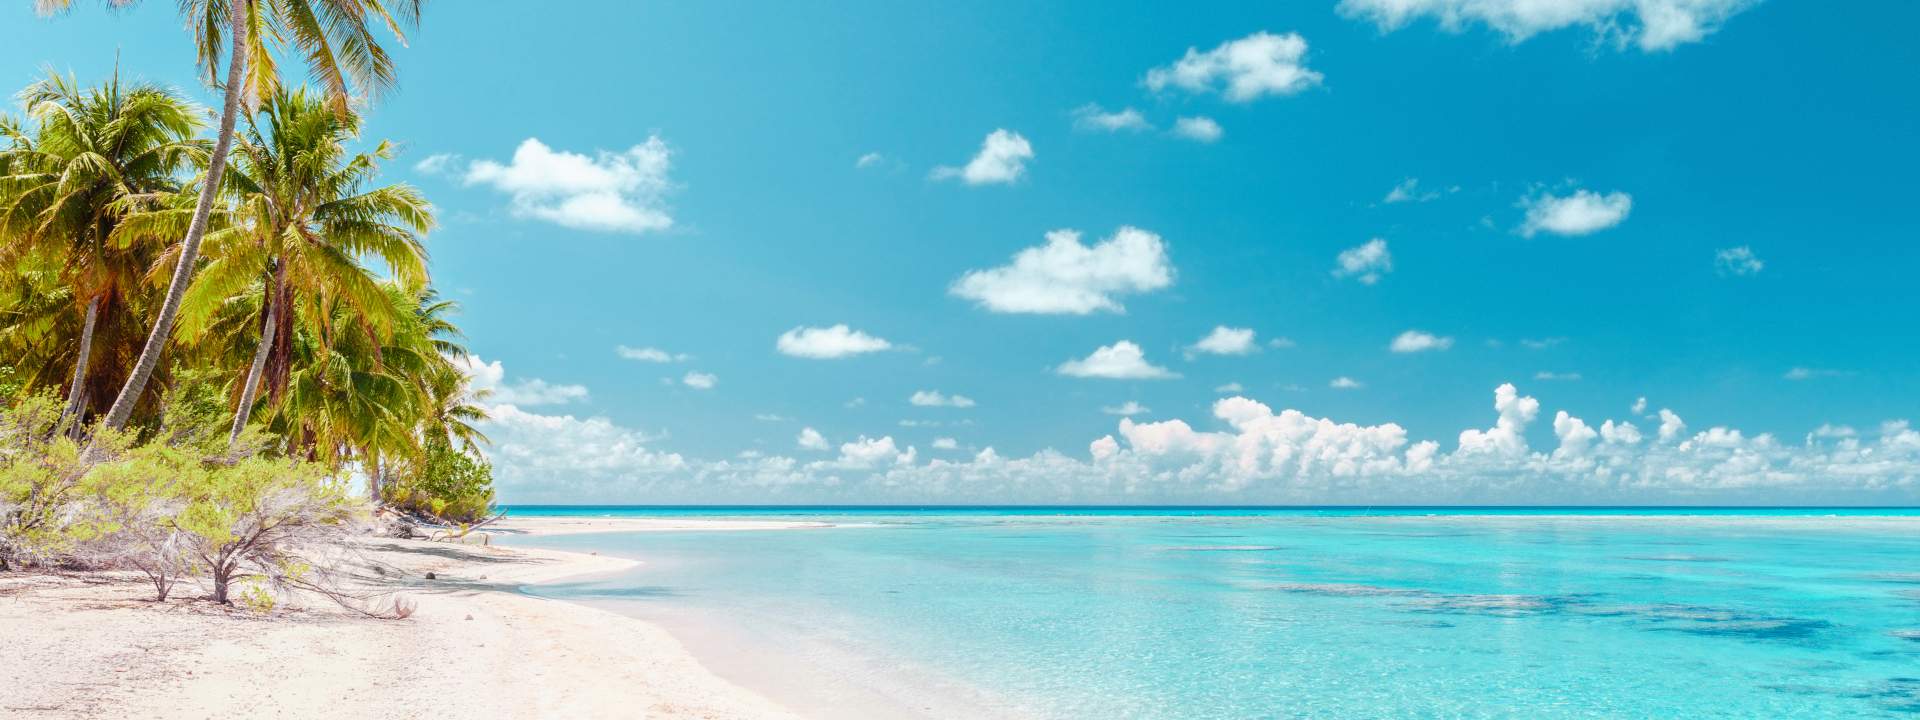 Odkryj piękne atole archipelagu Tuamotu